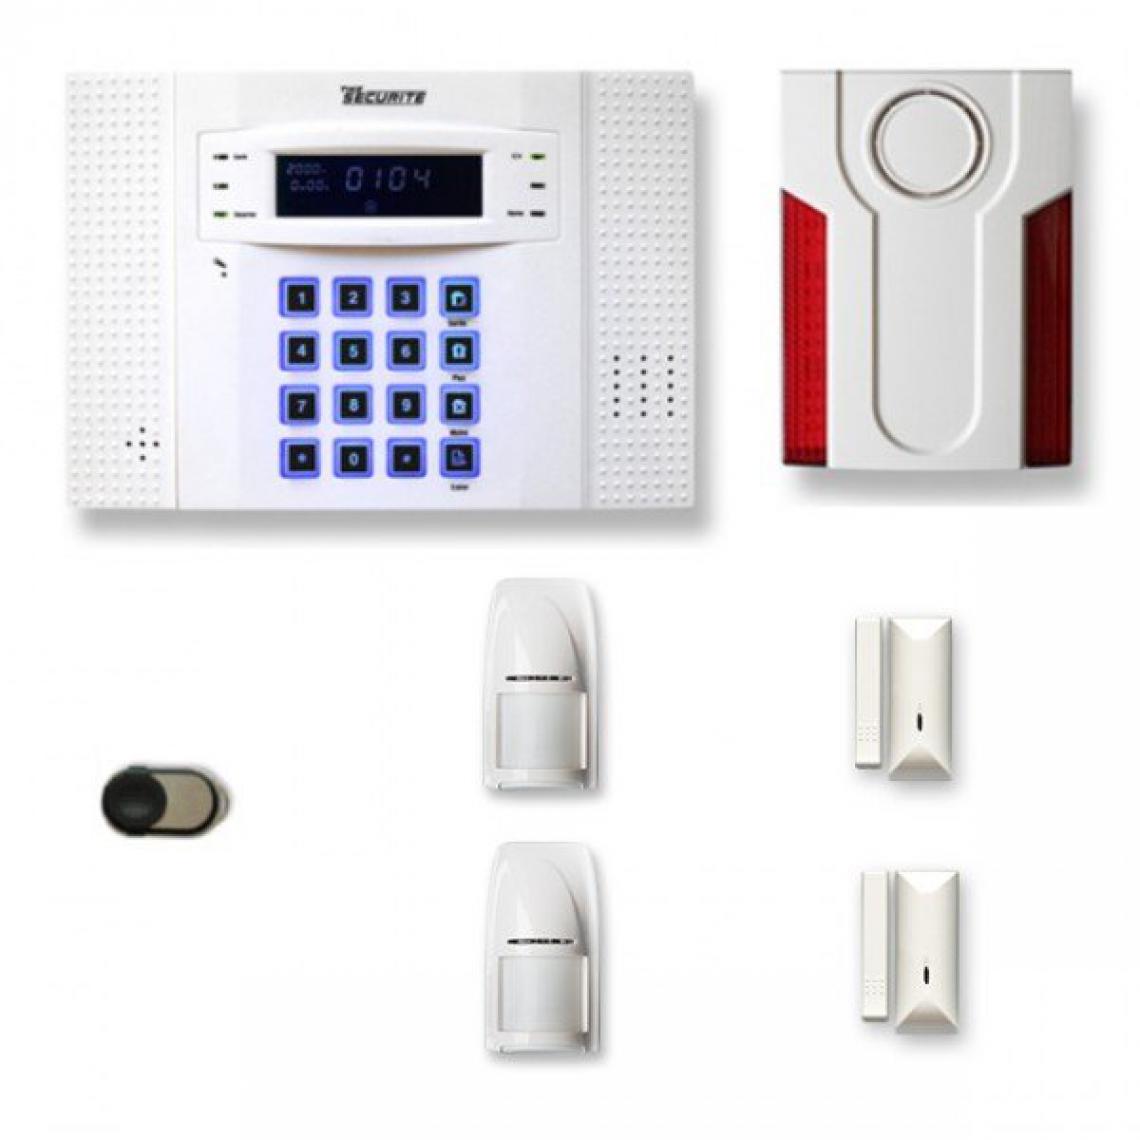 Tike Securite - Alarme maison sans fil DNB29 Compatible Box internet et GSM - Alarme connectée